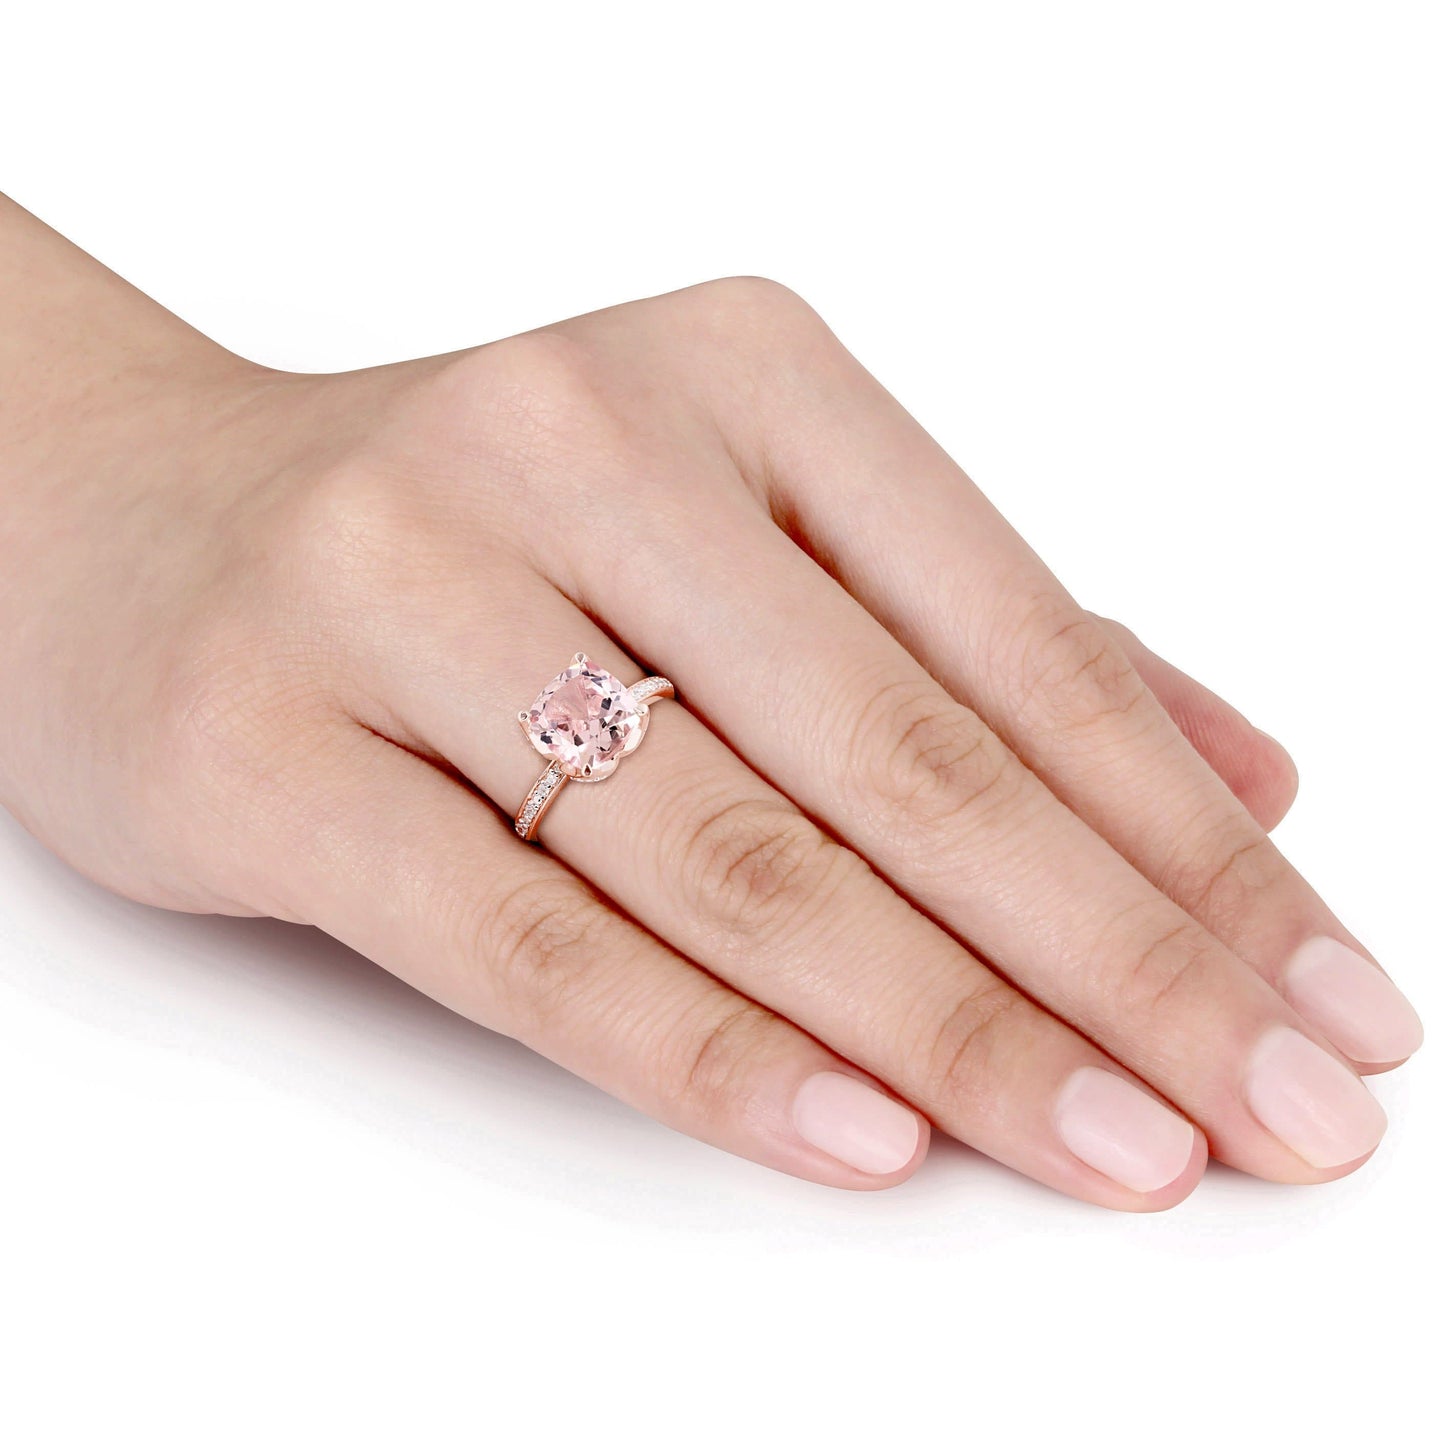 Sophia B Morganite & Diamond Ring in 10k Rose Gold